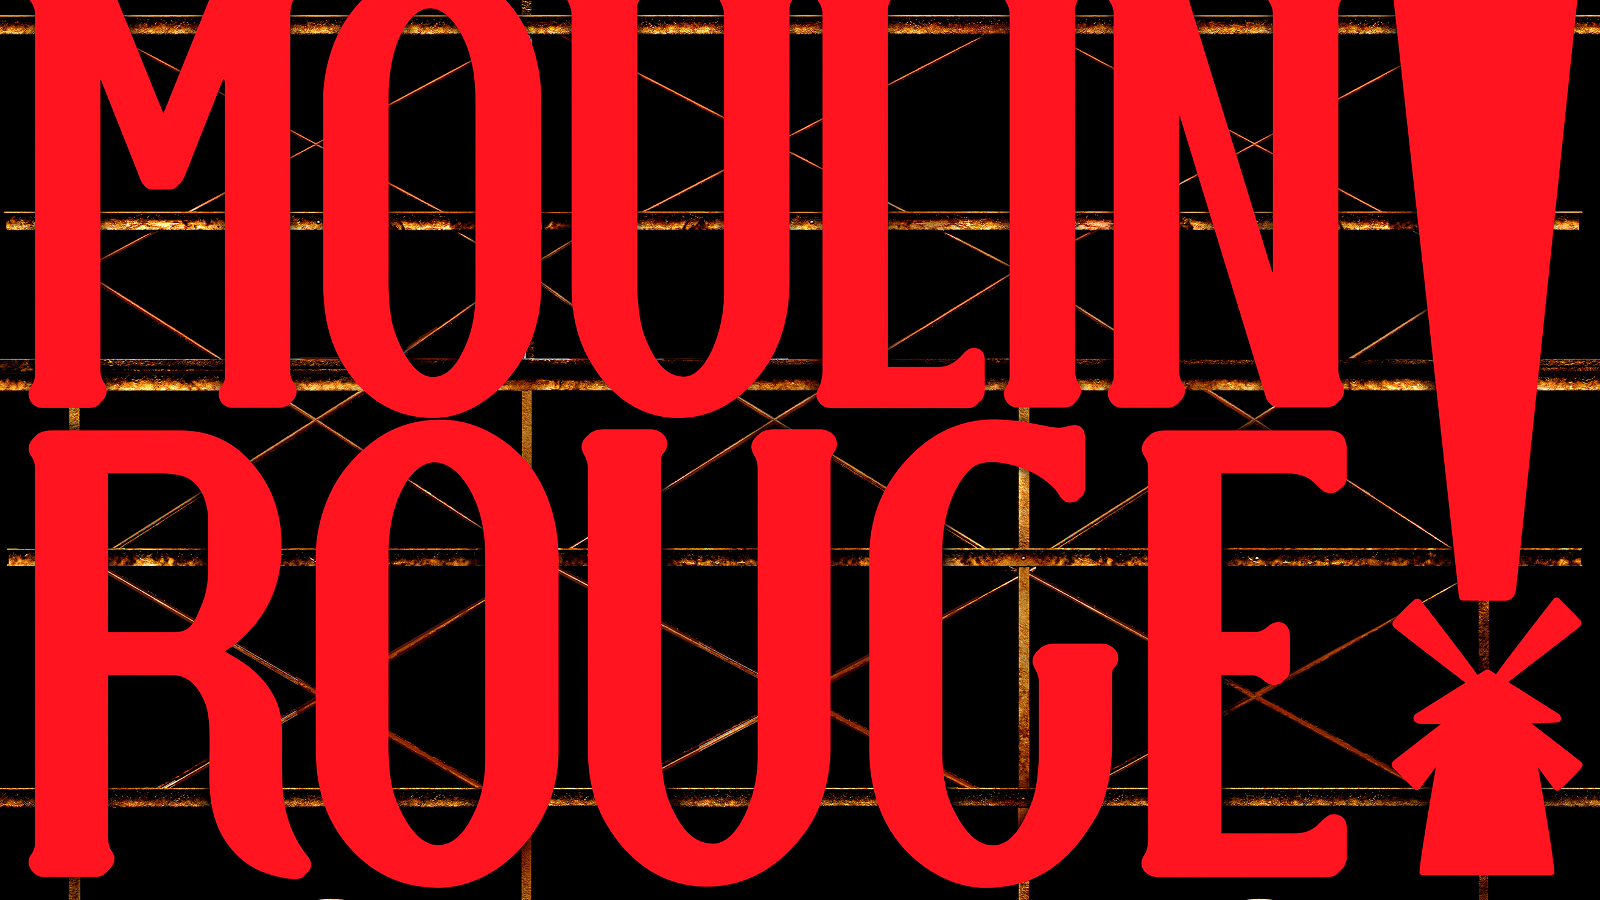 Kuvassa on Punaisilla isoilla kirjaimilla Moulin Rouge!  Taustalla on tumman ruskeaa ja keltaista, himmeää ristikkoa.